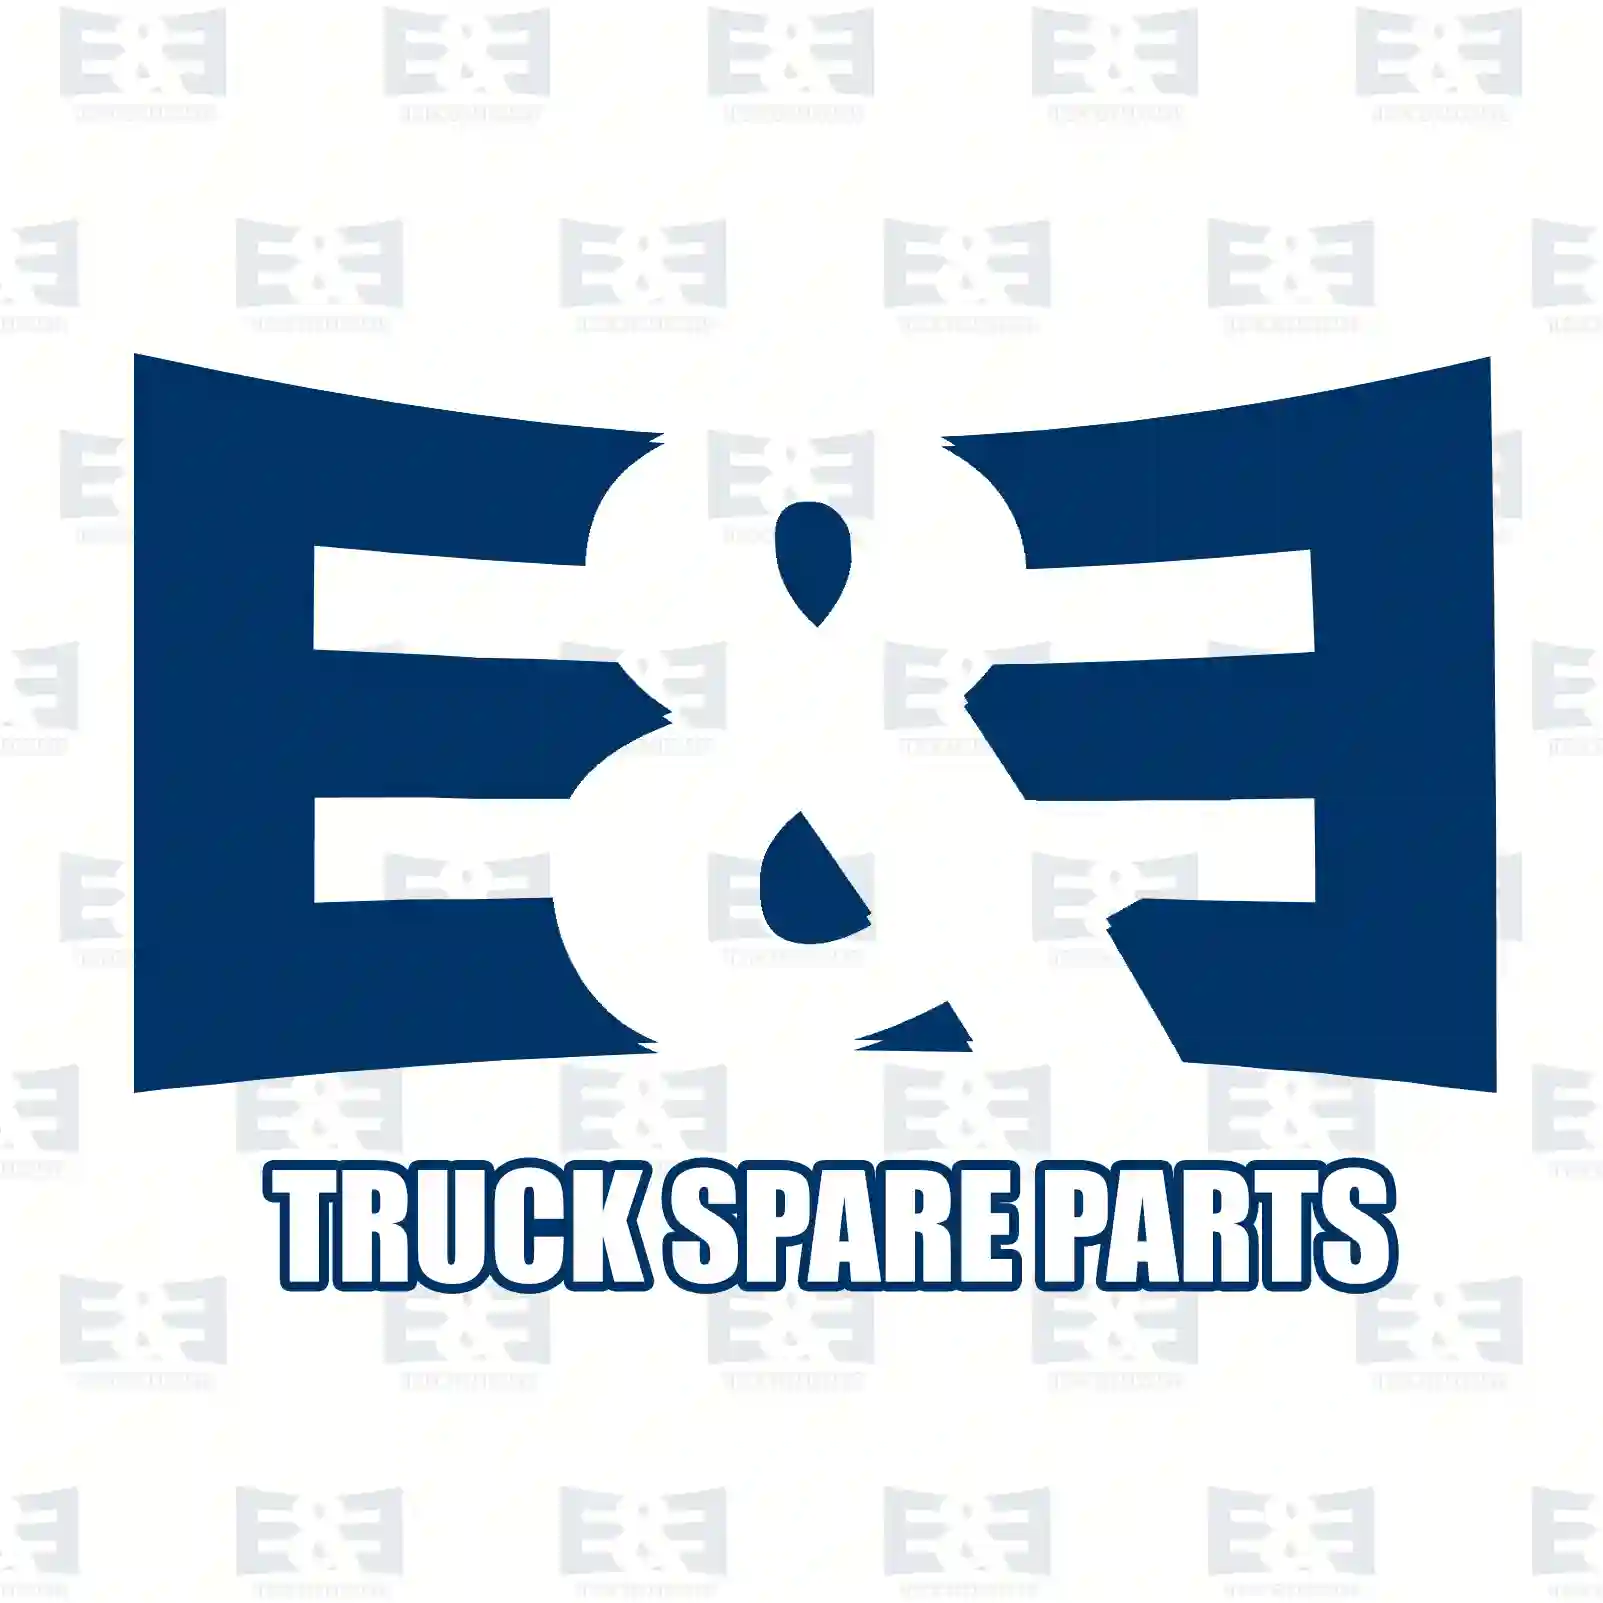 Position lamp, rear, 2E2299641, 0912070057762, G916901210010, 42325601, 0417108, 041710800, 417109, 42325601, 505123, AZ32730, 56479, 0008209356, 0008209556, 1503907020, 293945341 ||  2E2299641 E&E Truck Spare Parts | Truck Spare Parts, Auotomotive Spare Parts Position lamp, rear, 2E2299641, 0912070057762, G916901210010, 42325601, 0417108, 041710800, 417109, 42325601, 505123, AZ32730, 56479, 0008209356, 0008209556, 1503907020, 293945341 ||  2E2299641 E&E Truck Spare Parts | Truck Spare Parts, Auotomotive Spare Parts